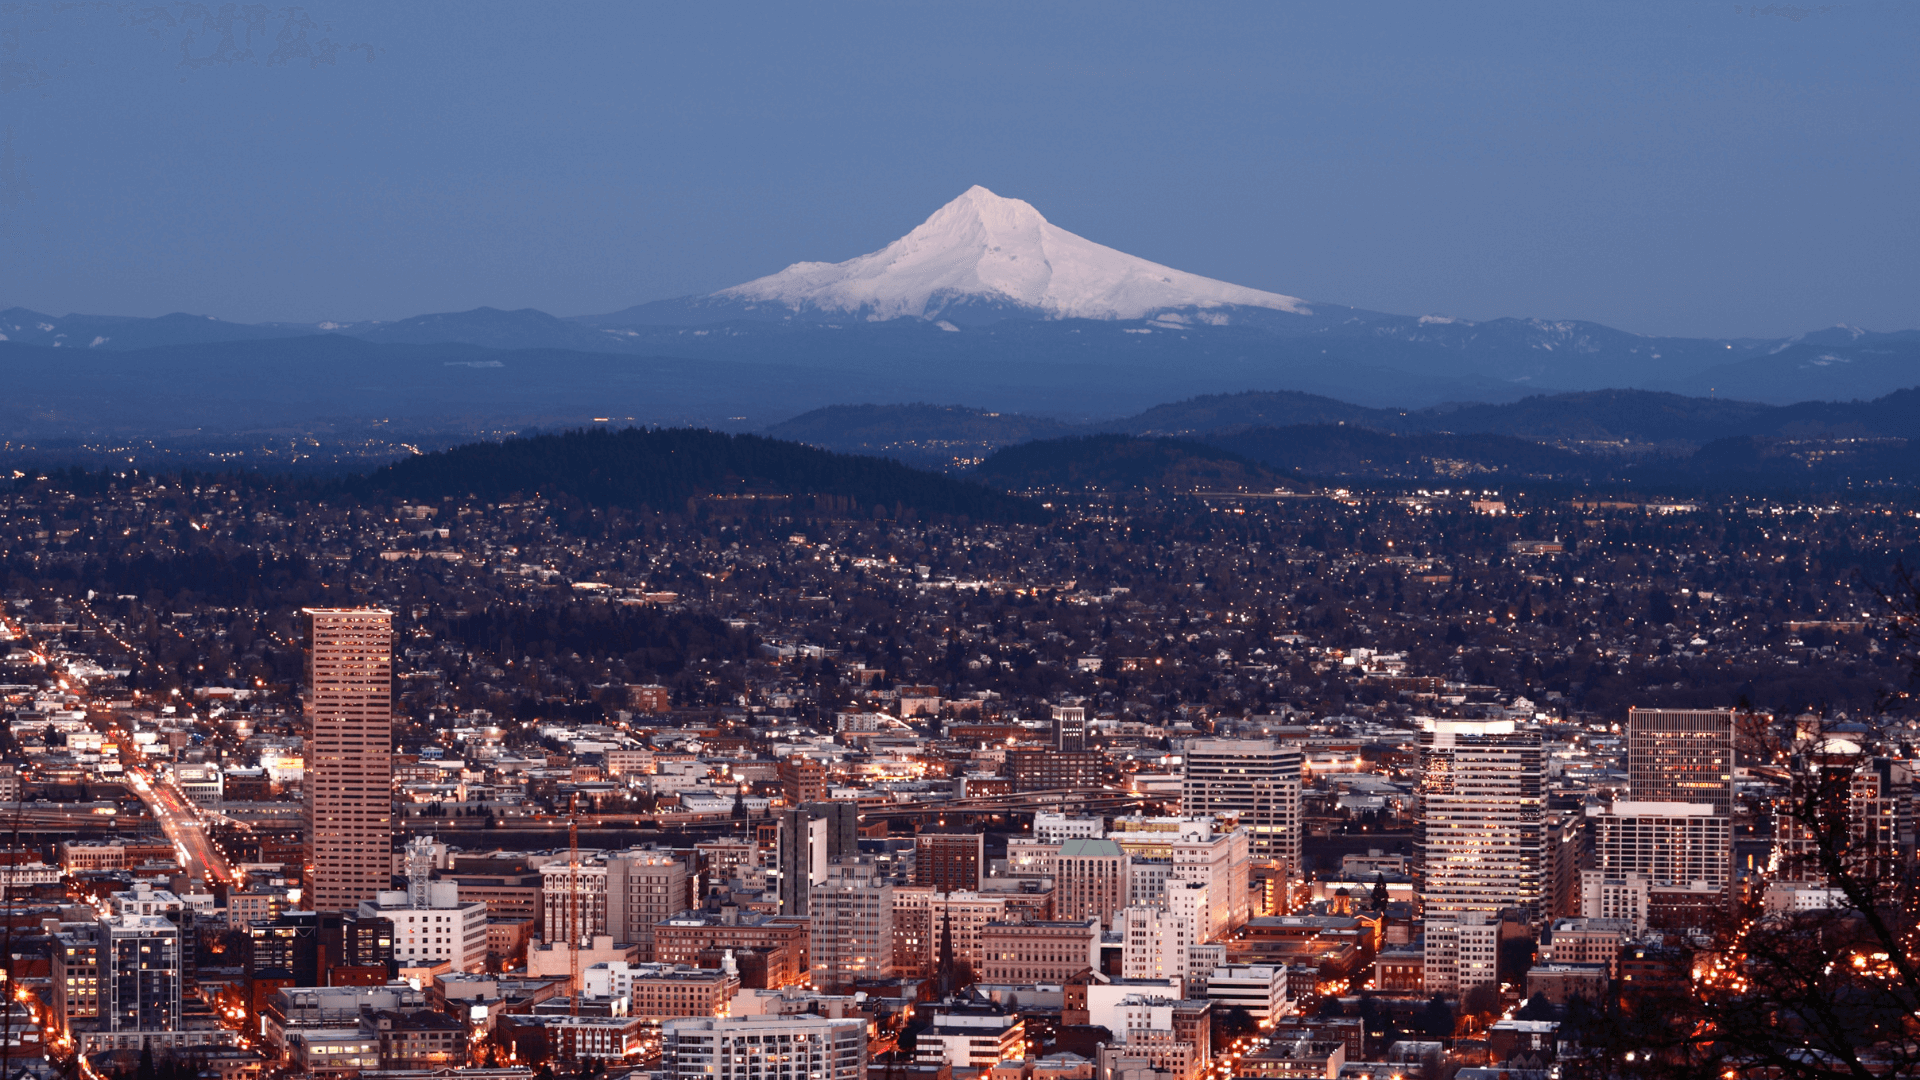 Portland skyline with Mount Hood